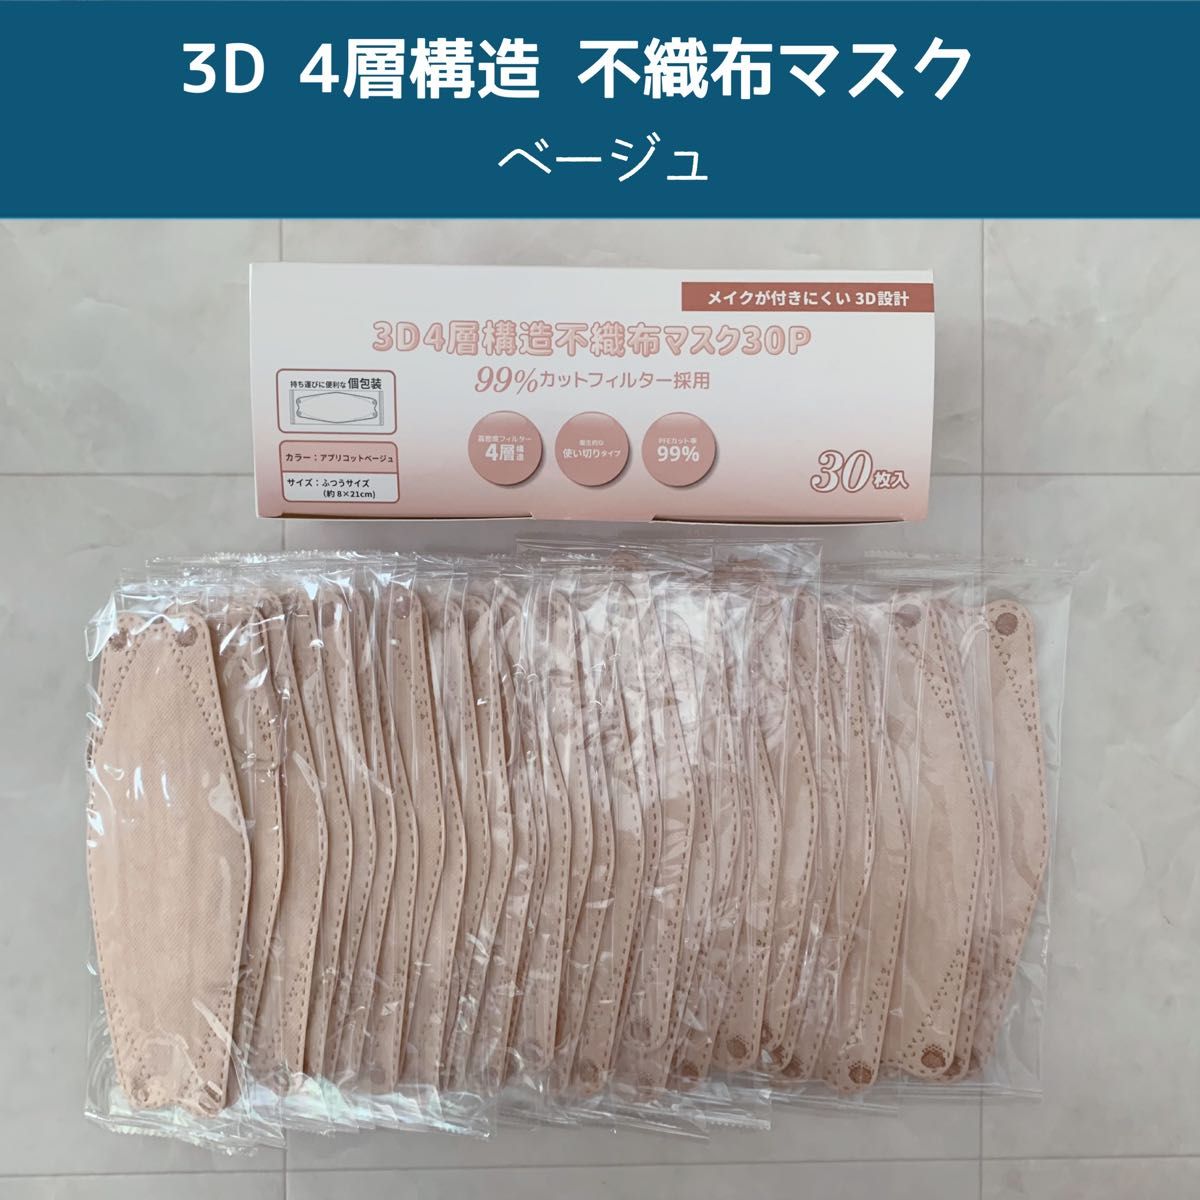 【新品】3D 4層構造 不織布マスク ベージュ